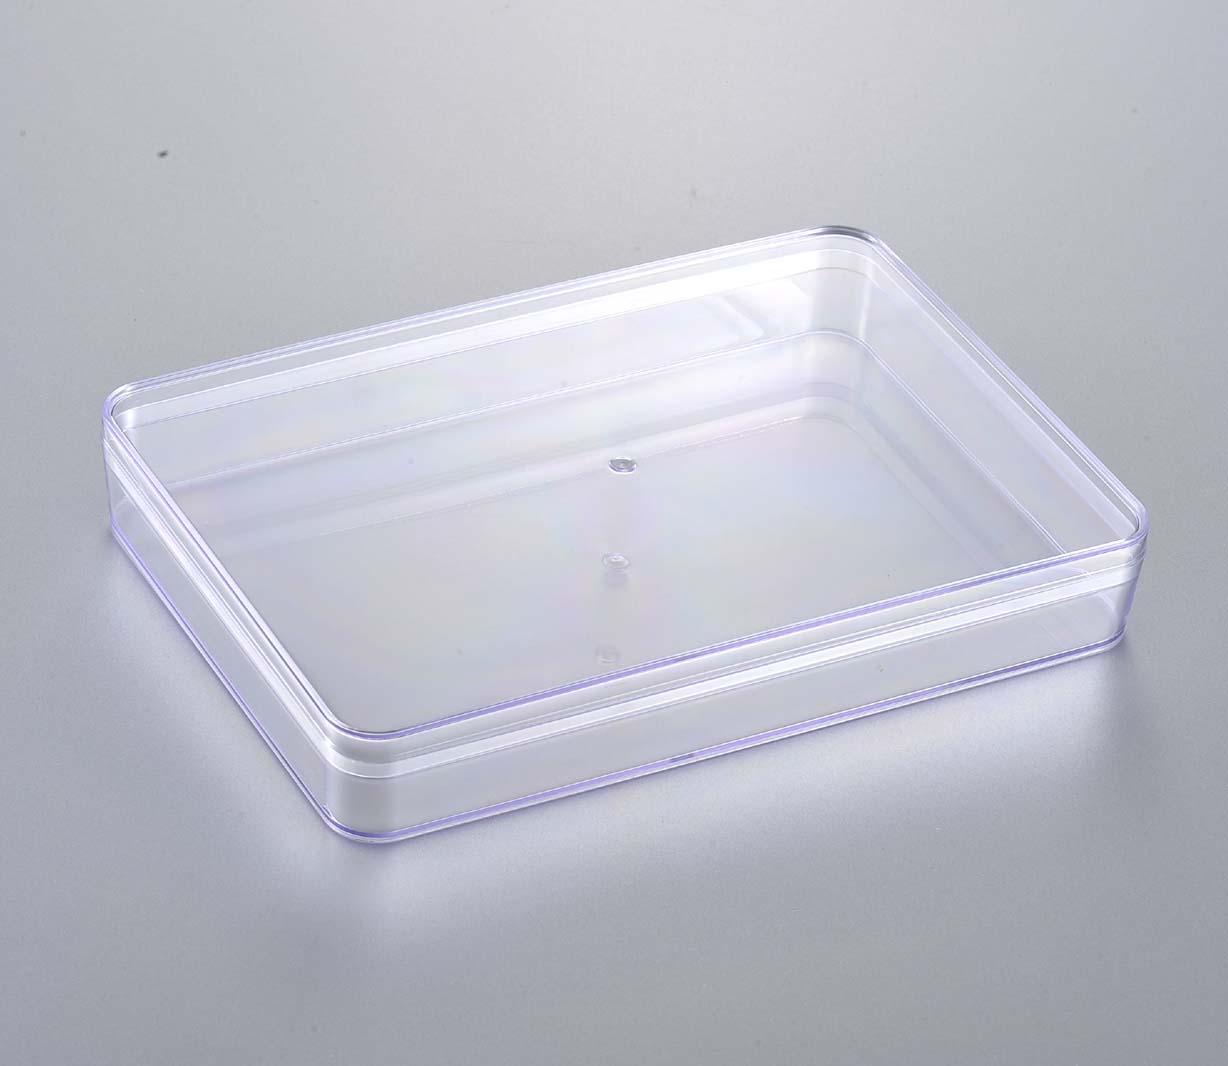 扁形盒(通用)  PS塑料盒